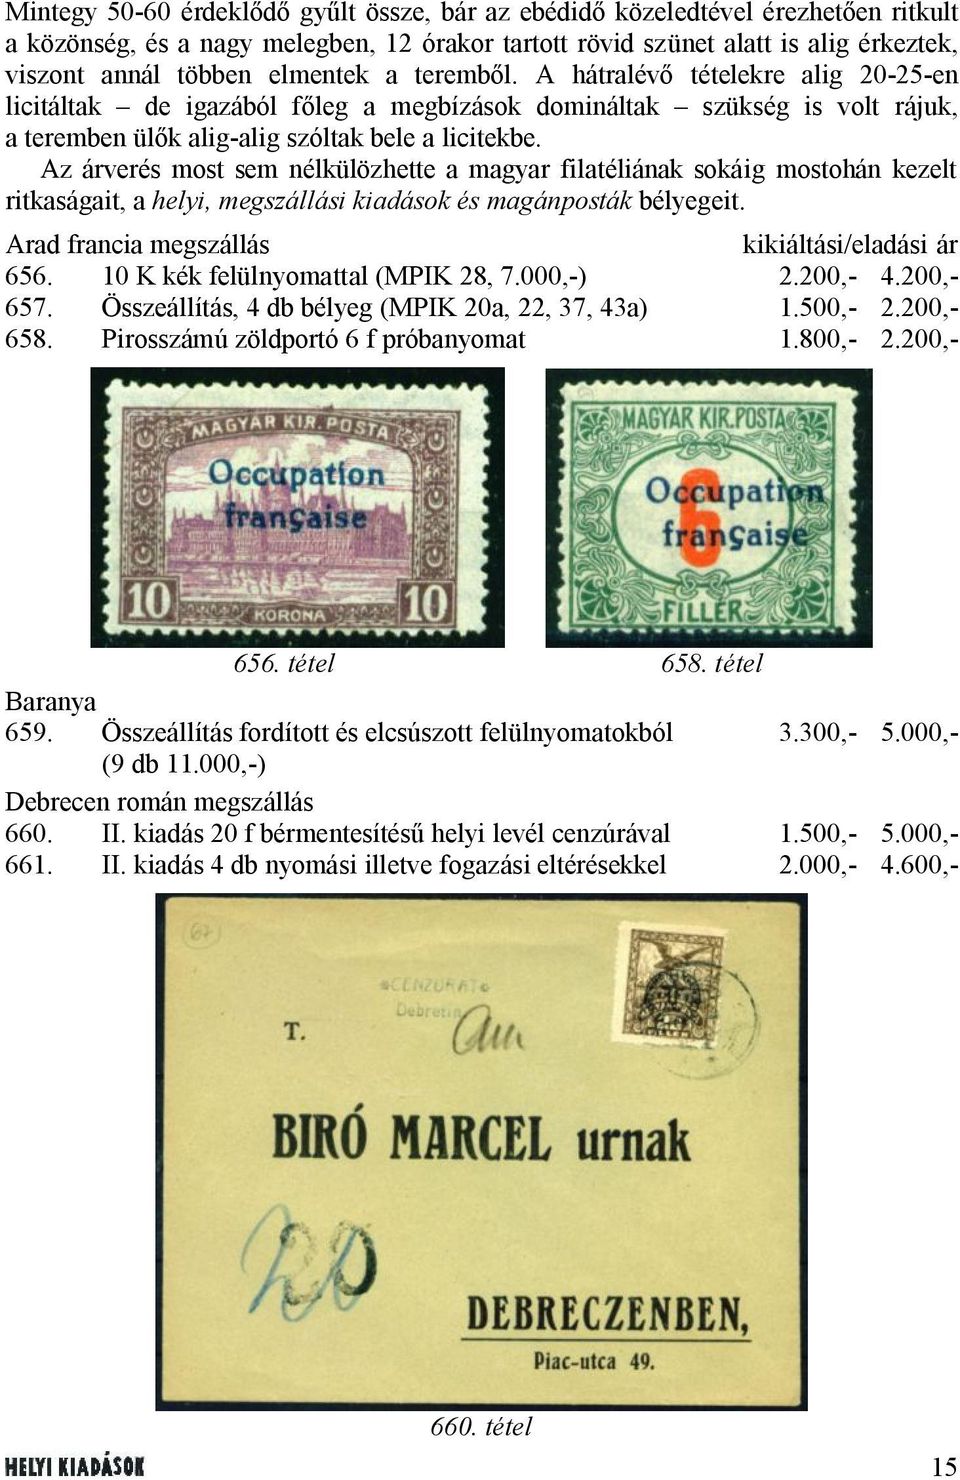 Az árverés most sem nélkülözhette a magyar filatéliának sokáig mostohán kezelt ritkaságait, a helyi, megszállási kiadások és magánposták bélyegeit. Arad francia megszállás kikiáltási/eladási ár 656.